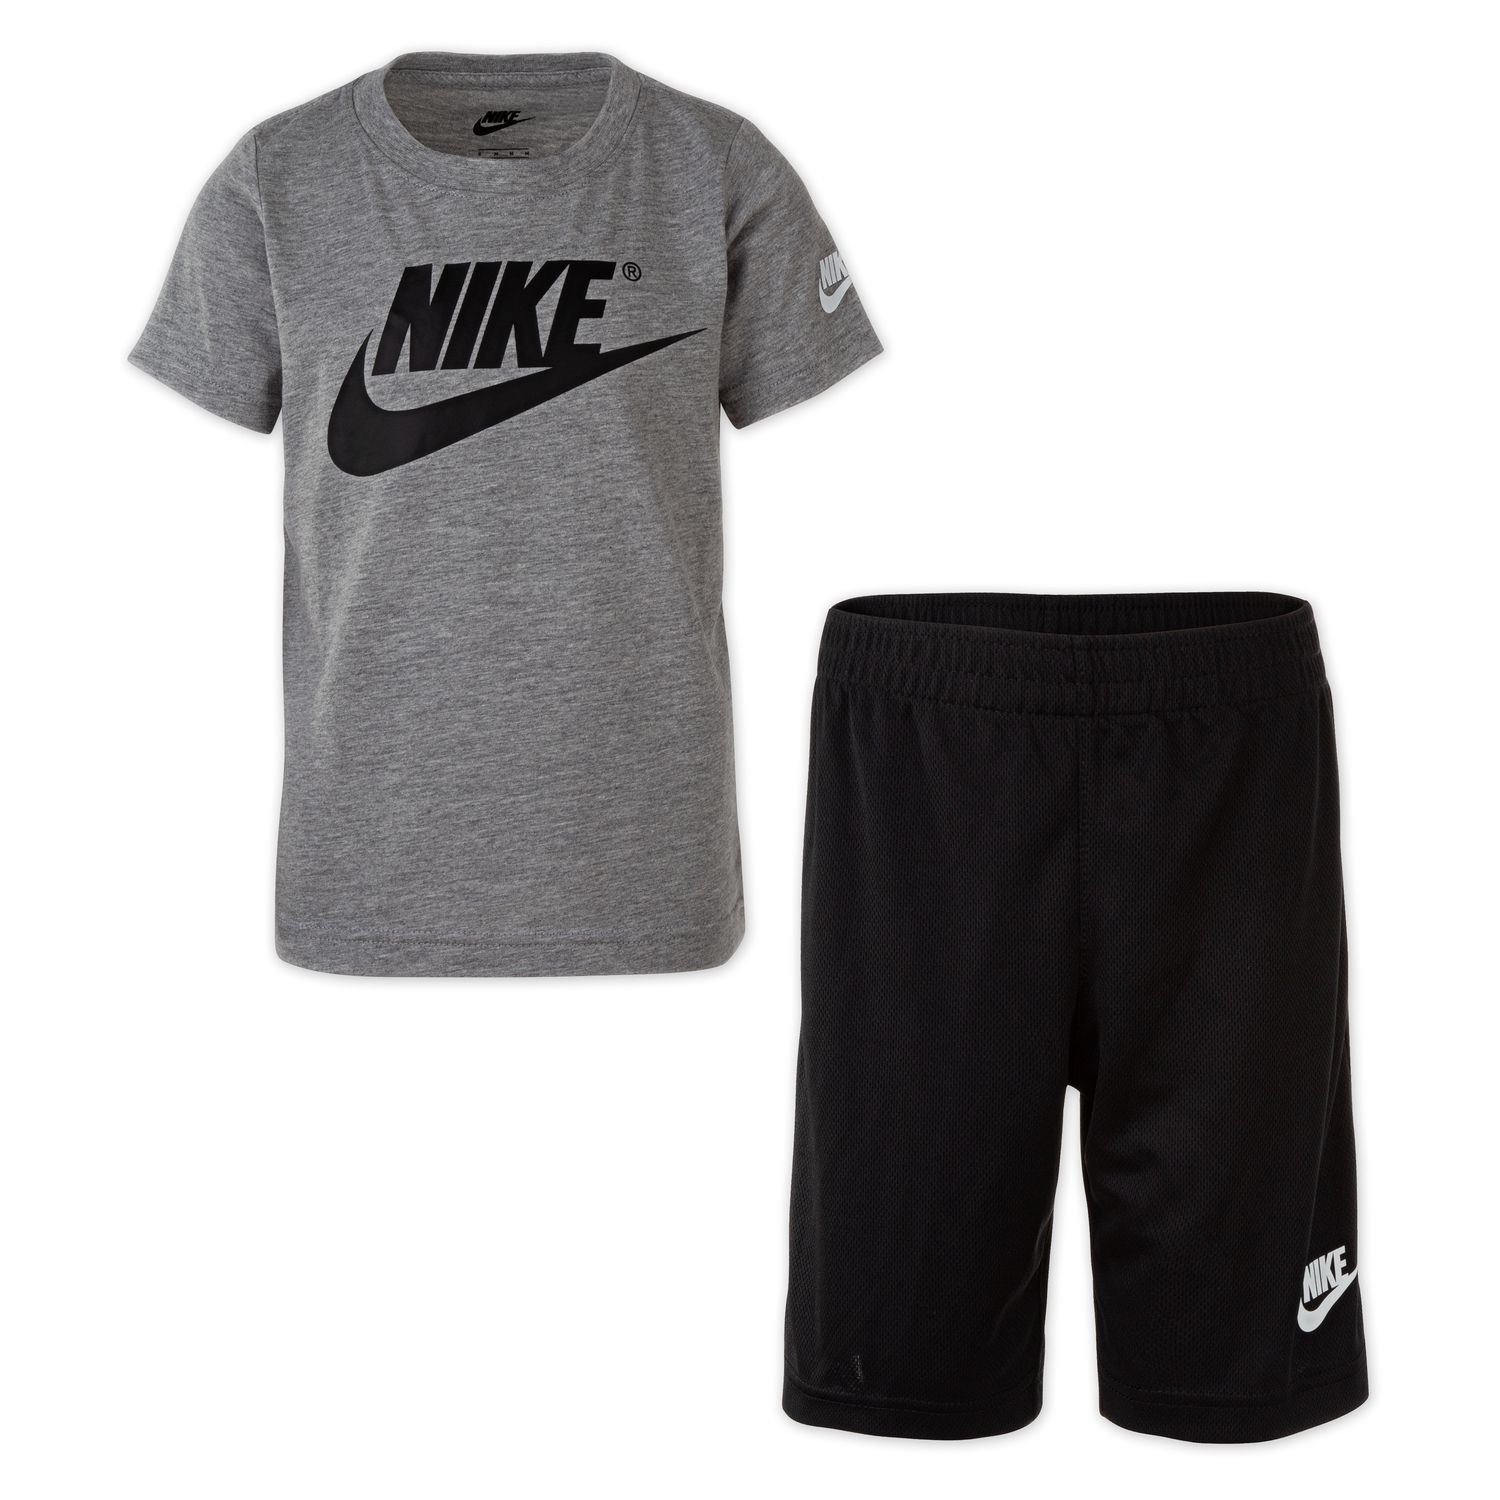 Boy nl. Сеты одежды найк. Спортивный сет найк. Комплект футболка и шорты Nike vs adidas. Nike boy.